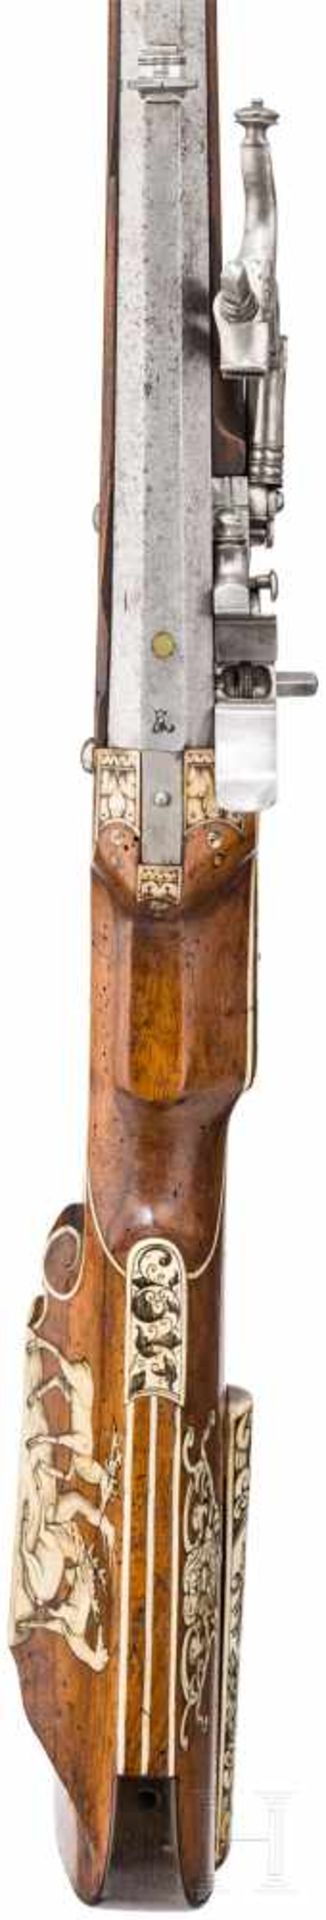 Fein verbeinte Radschlossbüchse, süddeutsch, um 1630/40Achtkantiger, mittig leicht eingezogener Lauf - Bild 4 aus 10